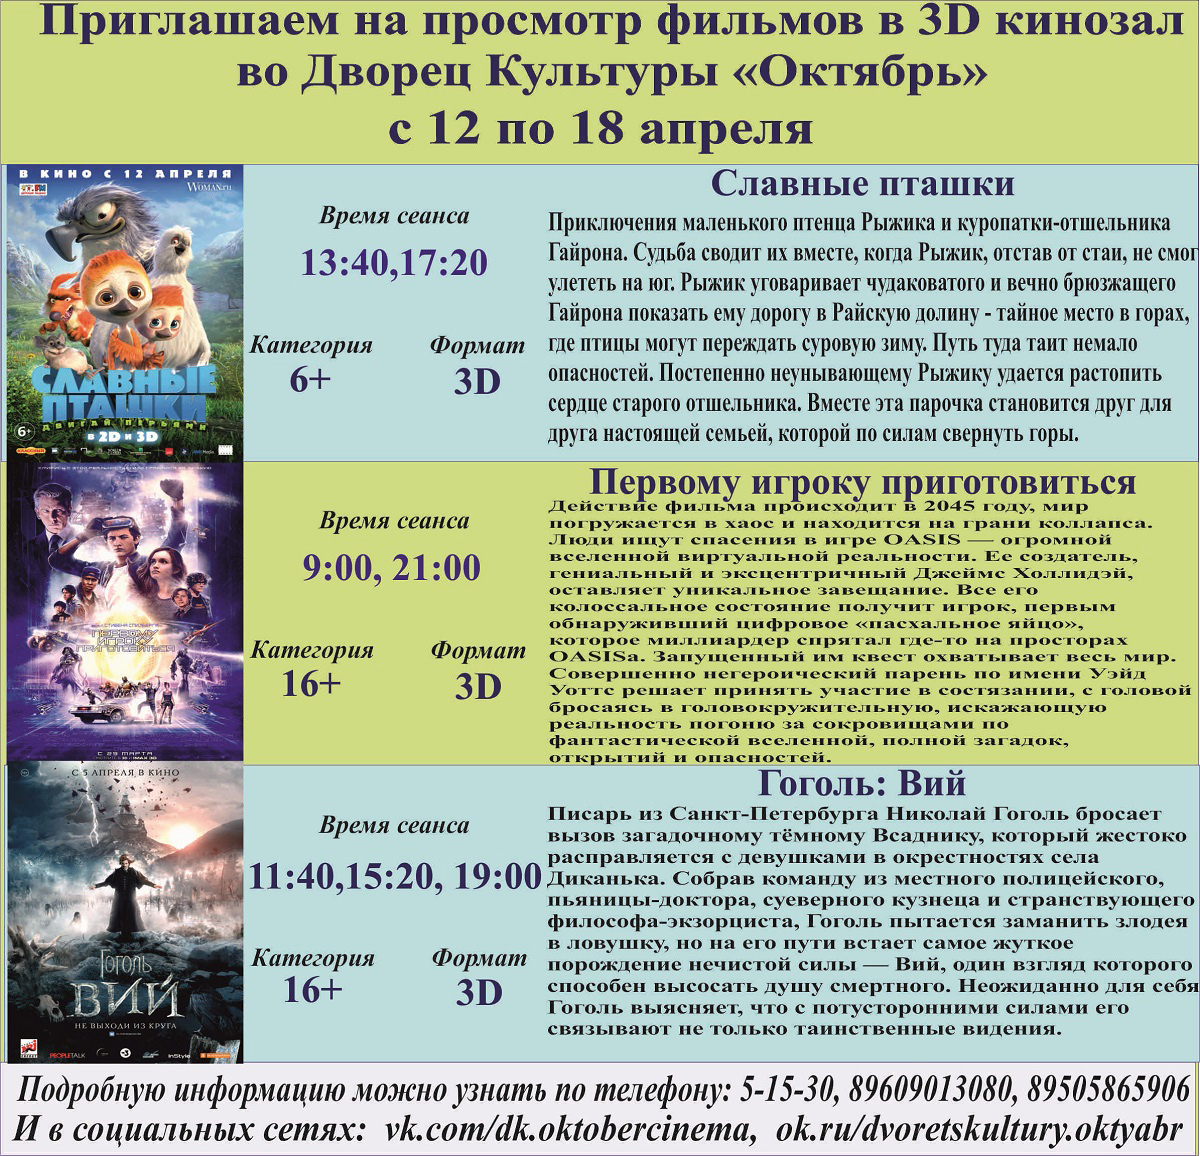 Анонс сеансов с 12 по 18 апреля кинозала ДК "Октябрь"